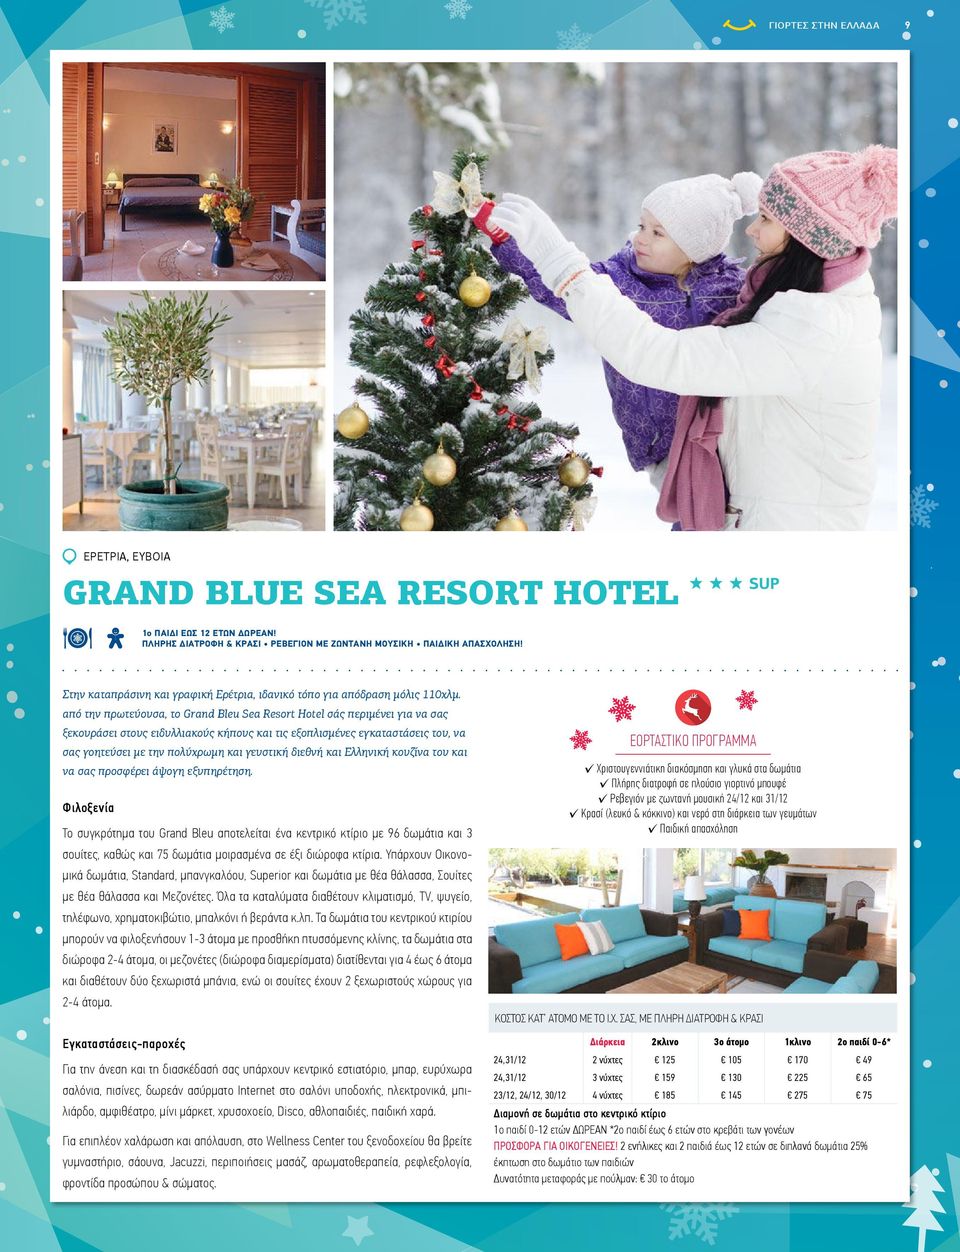 από την πρωτεύουσα, το Grand Bleu Sea Resort Hotel σάς περιμένει για να σας ξεκουράσει στους ειδυλλιακούς κήπους και τις εξοπλισμένες εγκαταστάσεις του, να ΕΟΡΤΑΣΤΙΚΟ ΠΡΟΓΡΑΜΜΑ σας γοητεύσει με την